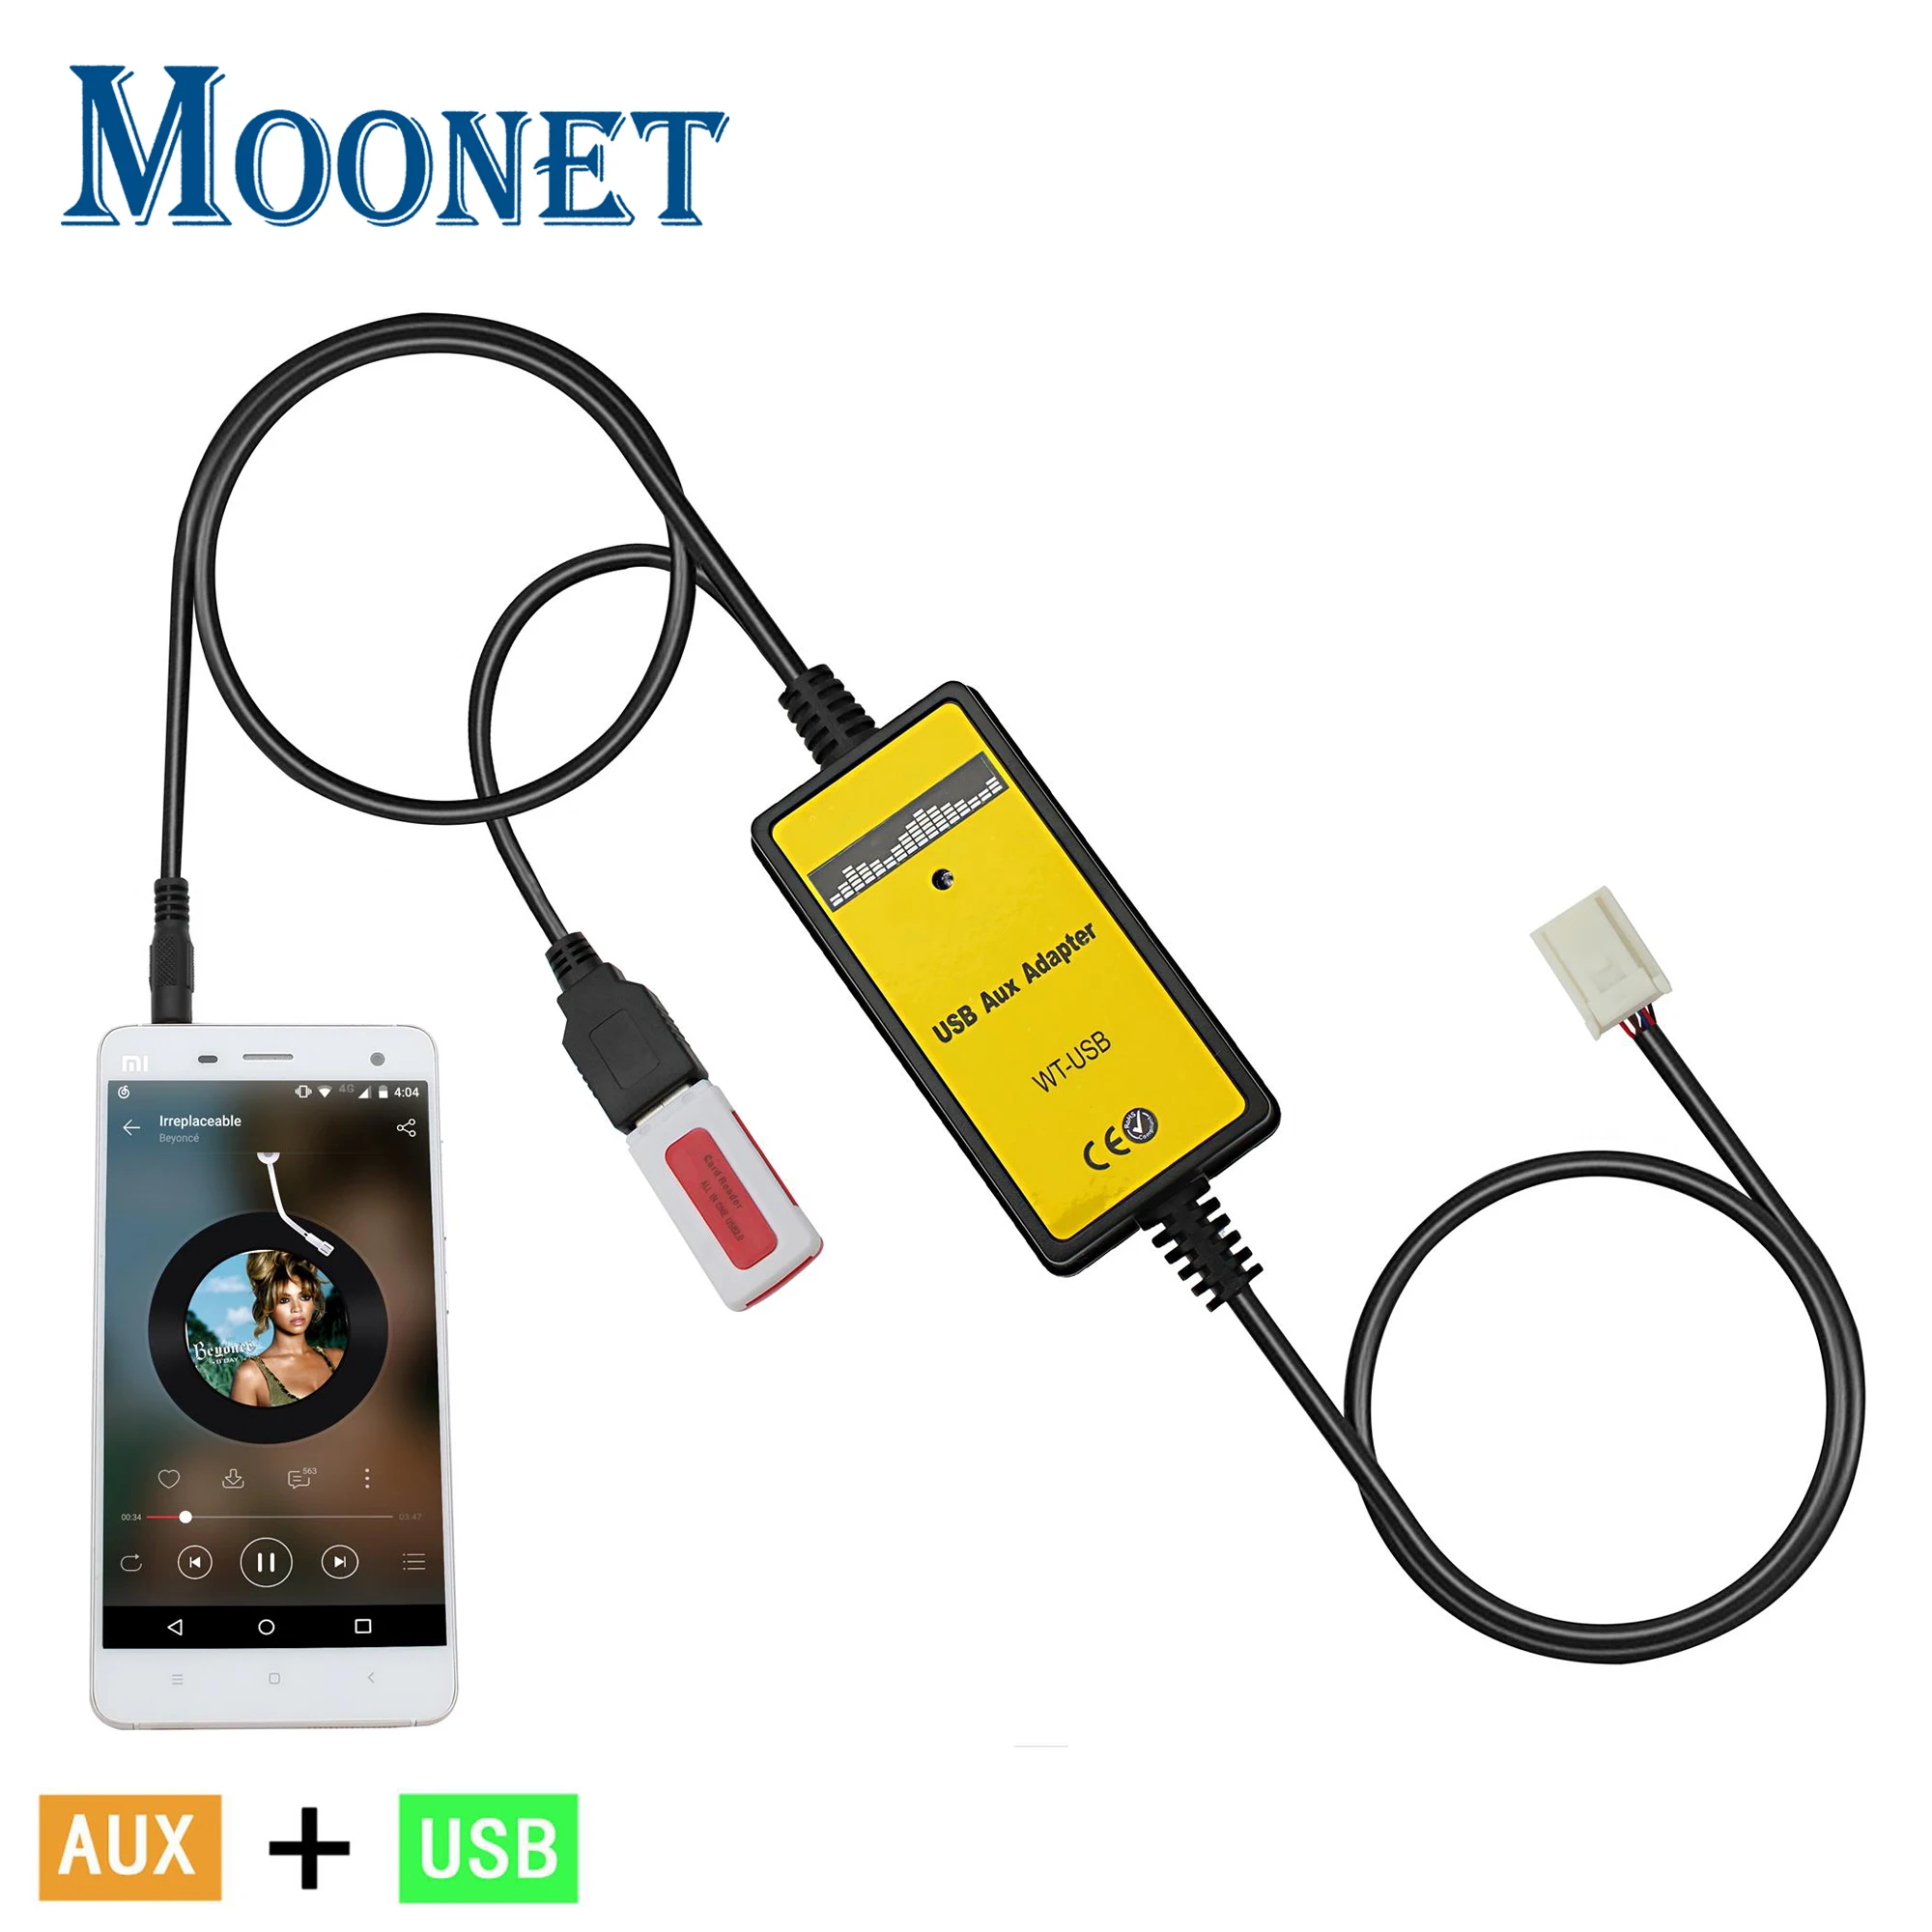 Moonet-Adaptador de música para coche, cambiador de CD de entrada USB y AUX, 6 + 6 pines, para Toyota RAV4, Avenis, Corolla, Camry, Vitz, Yaris (sin Navi y DVD)